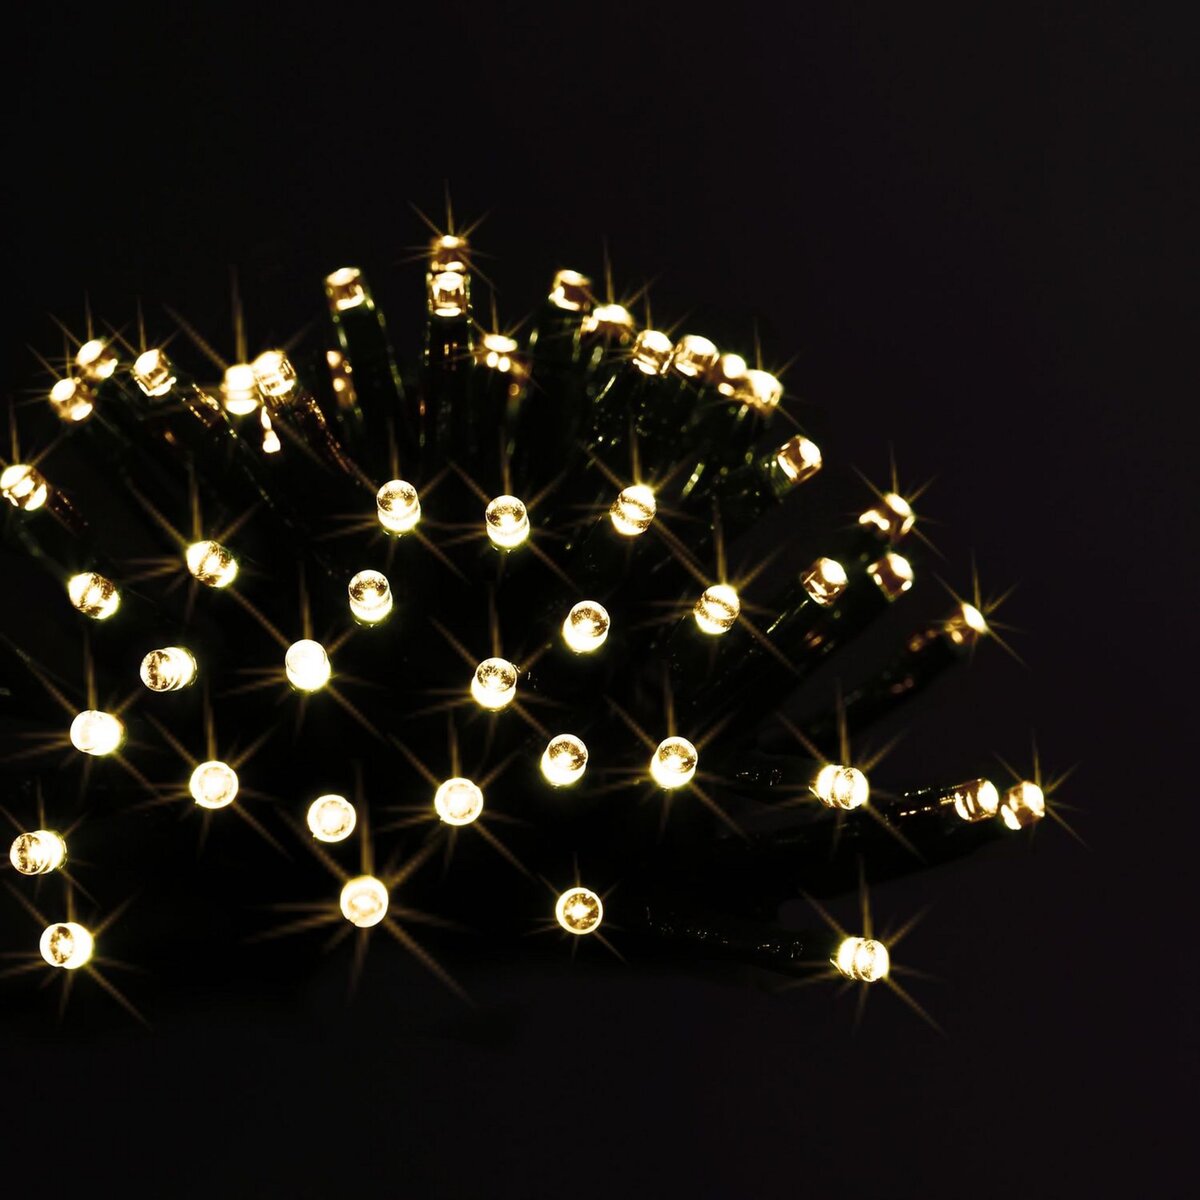 Guirlande extérieure de Noël à piles LED - L. 1400 cm - Blanc